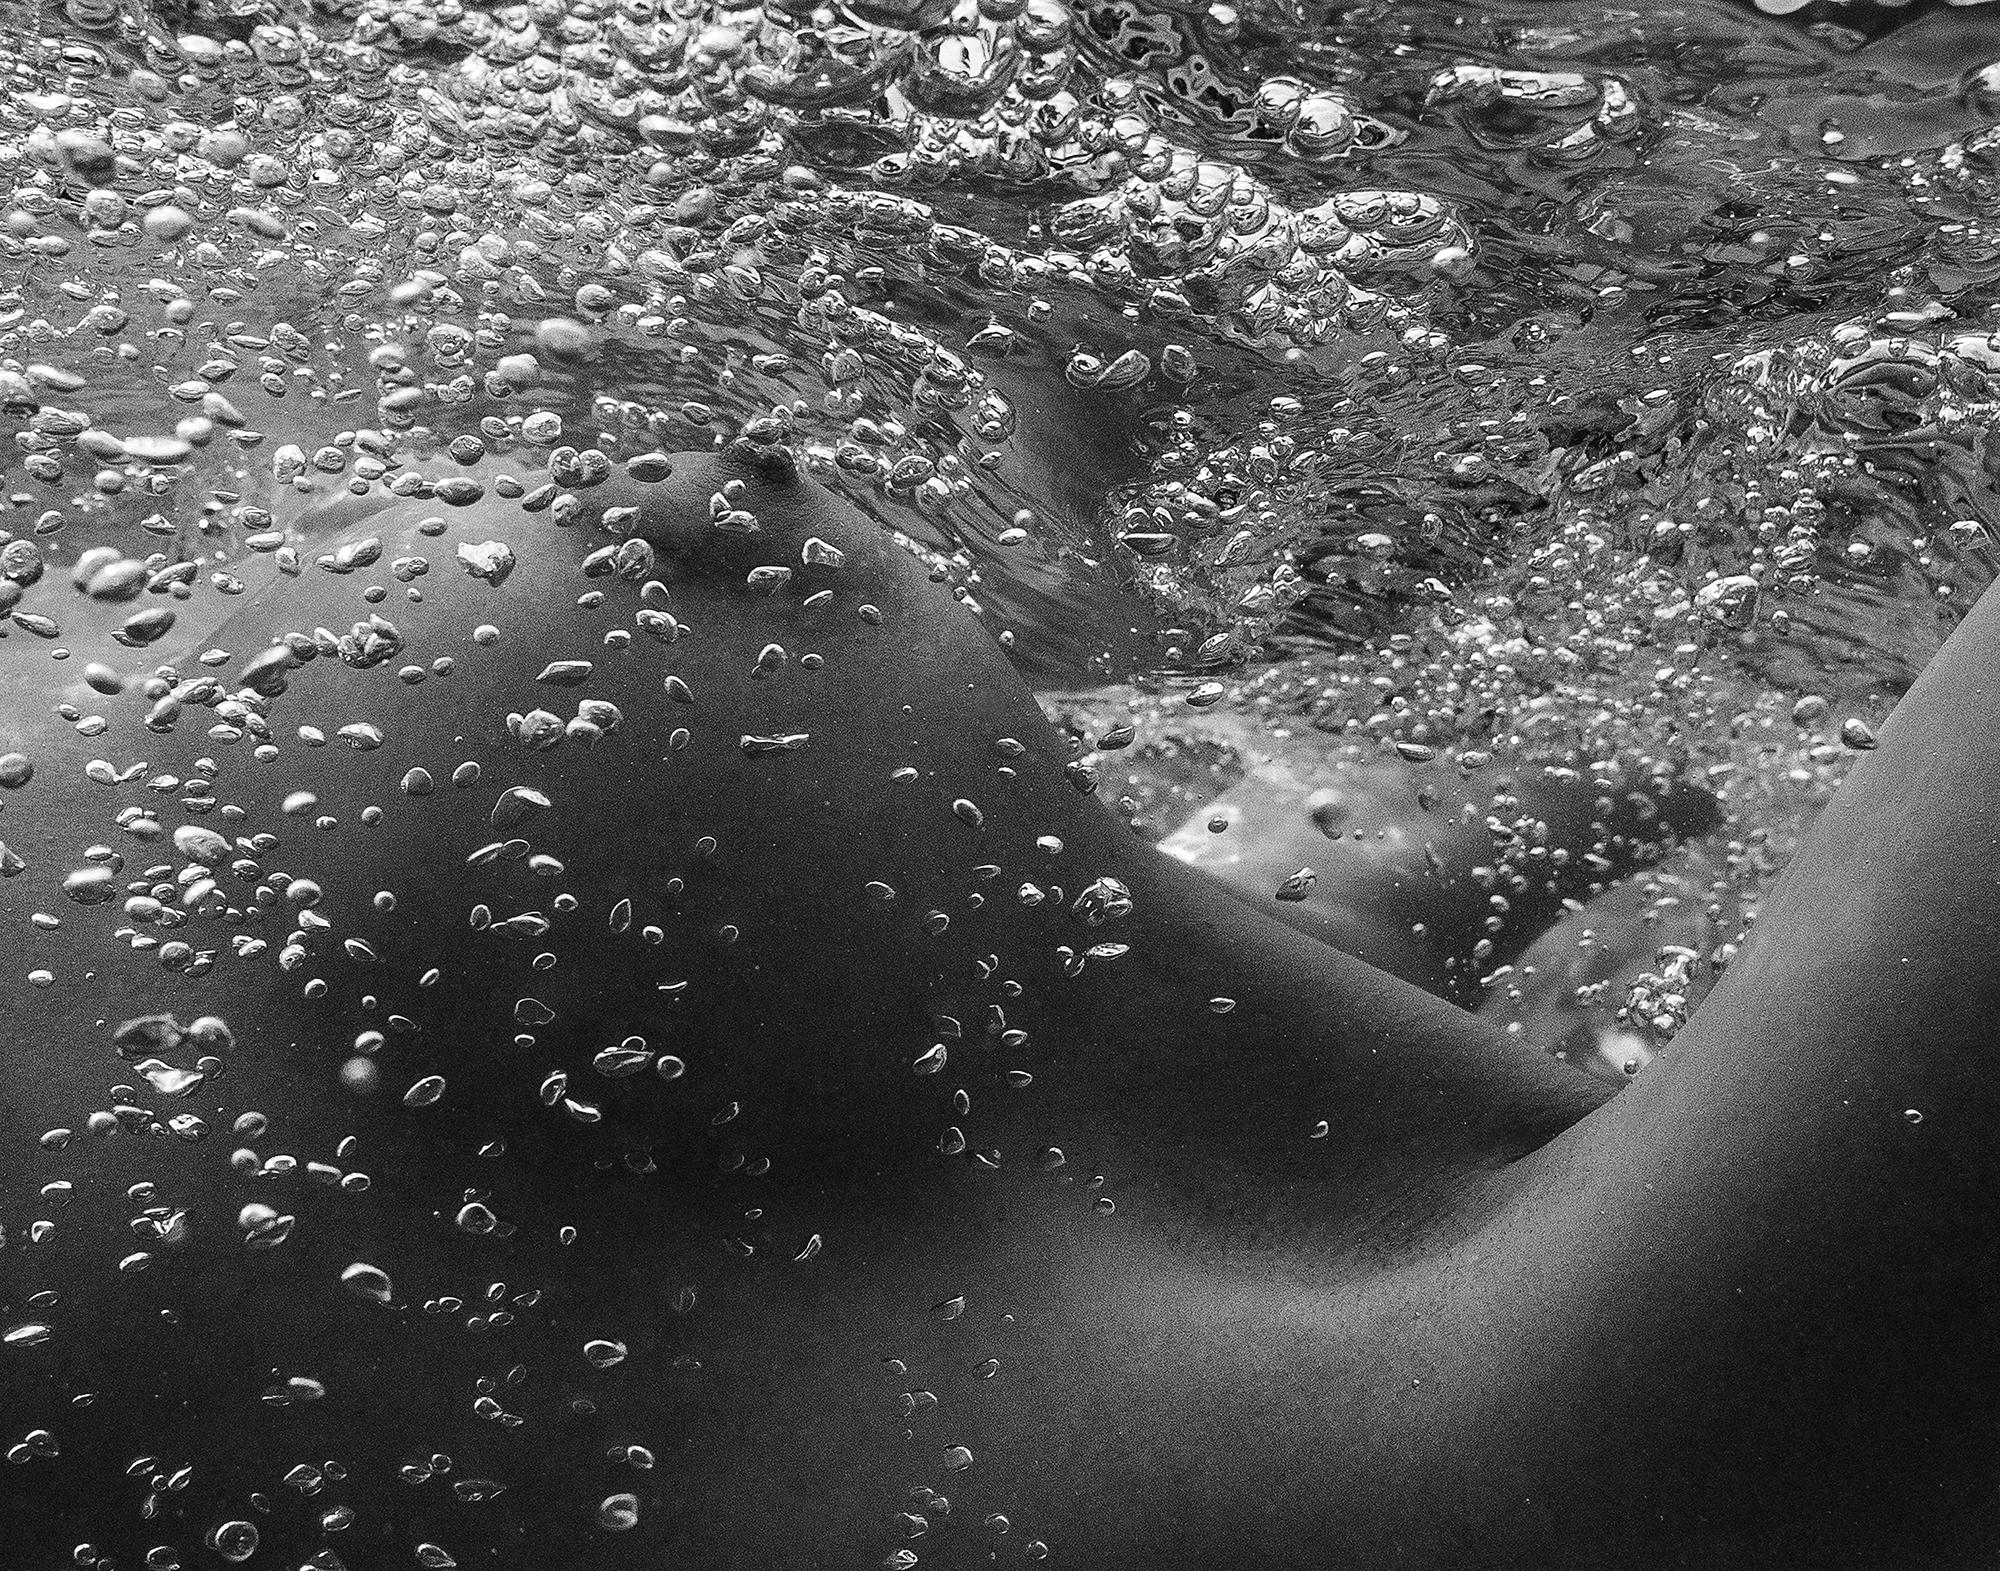 Photographie sous-marine en noir et blanc d'une belle jeune femme nue dont les seins sont recouverts de bulles d'air.

